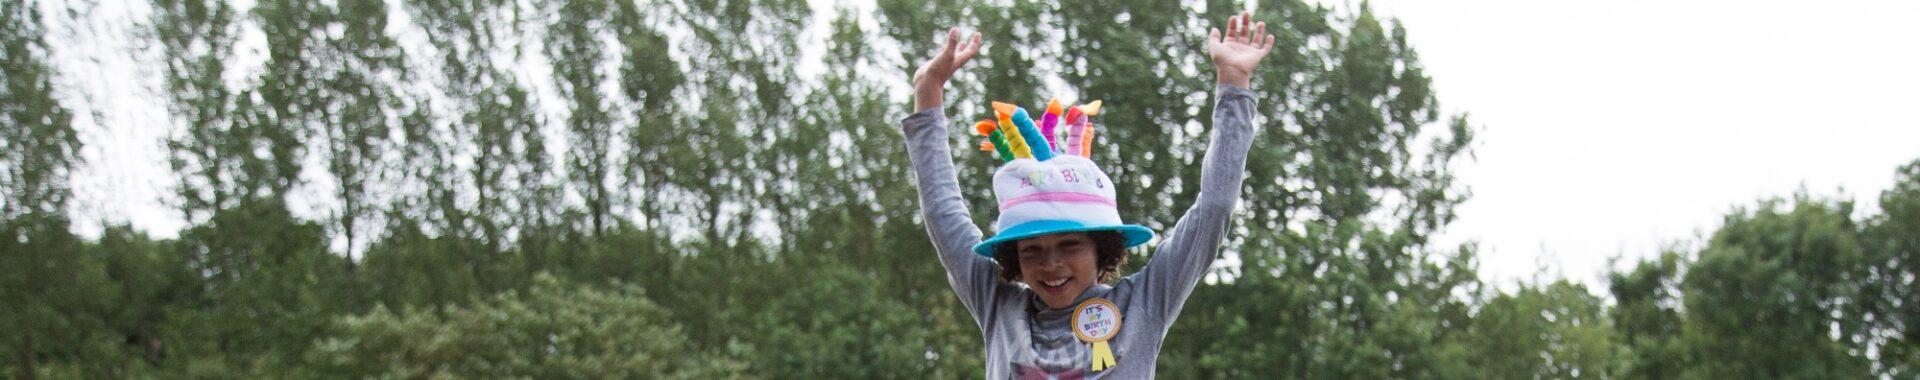 De leukste kinderfeestjes vier je bij Outdoorpark Alkmaar